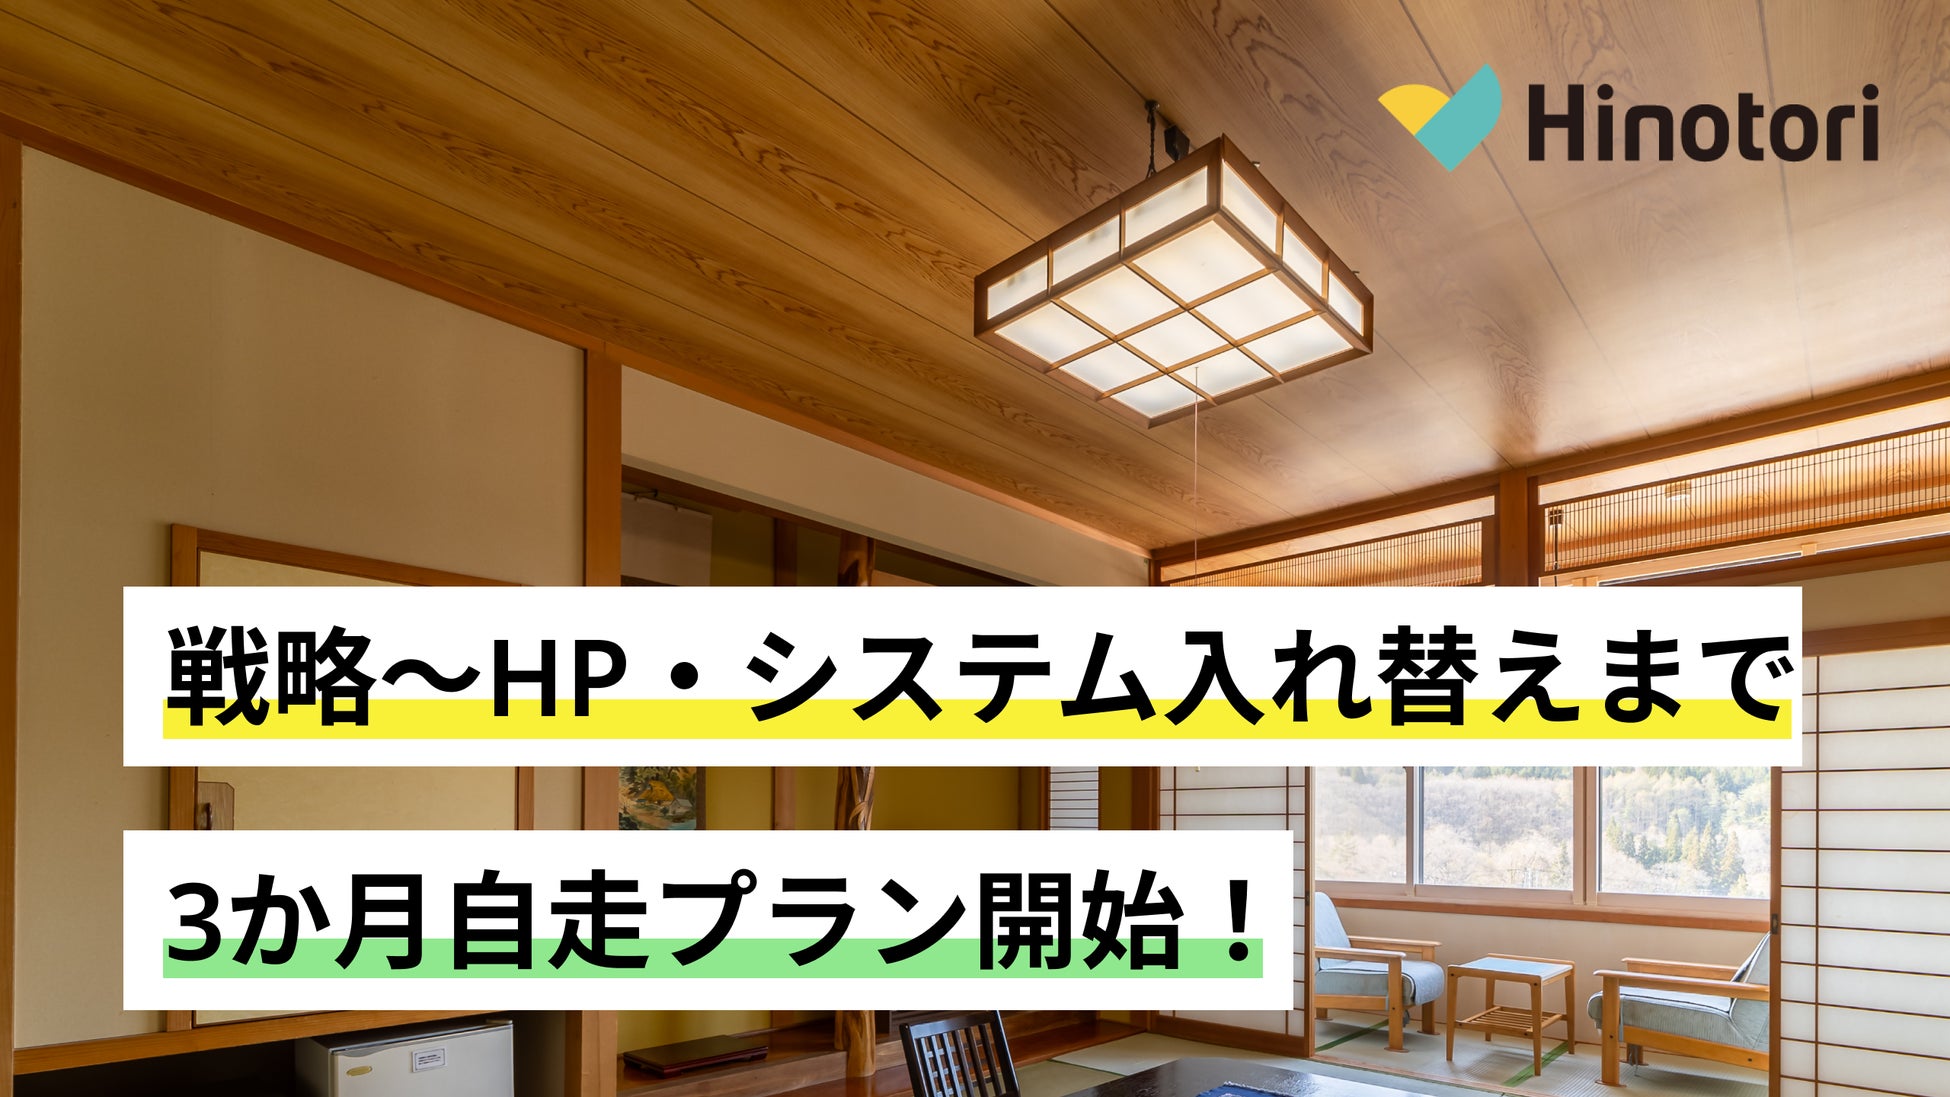 Hinotoriが「戦略～HP・予約システムまで、3か月自走プラン」を地方旅館・ホテル向けに提供開始